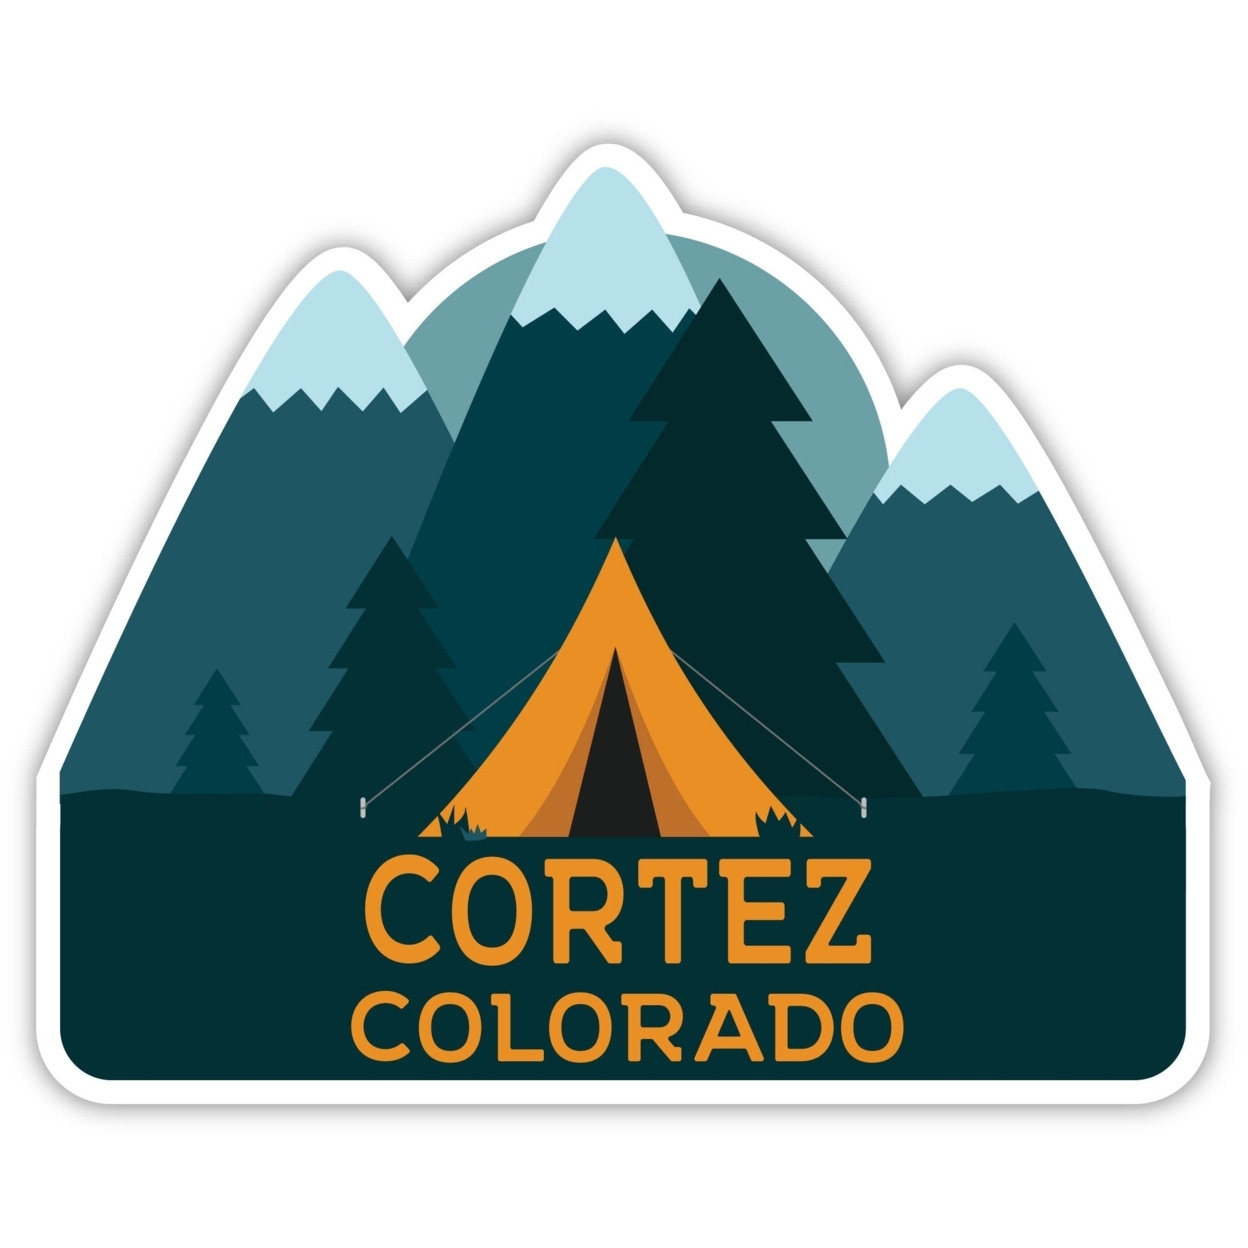 Cortez Colorado Souvenir Decorative Stickers (Choose Theme And Size) - 4-Pack, 2-Inch, Tent